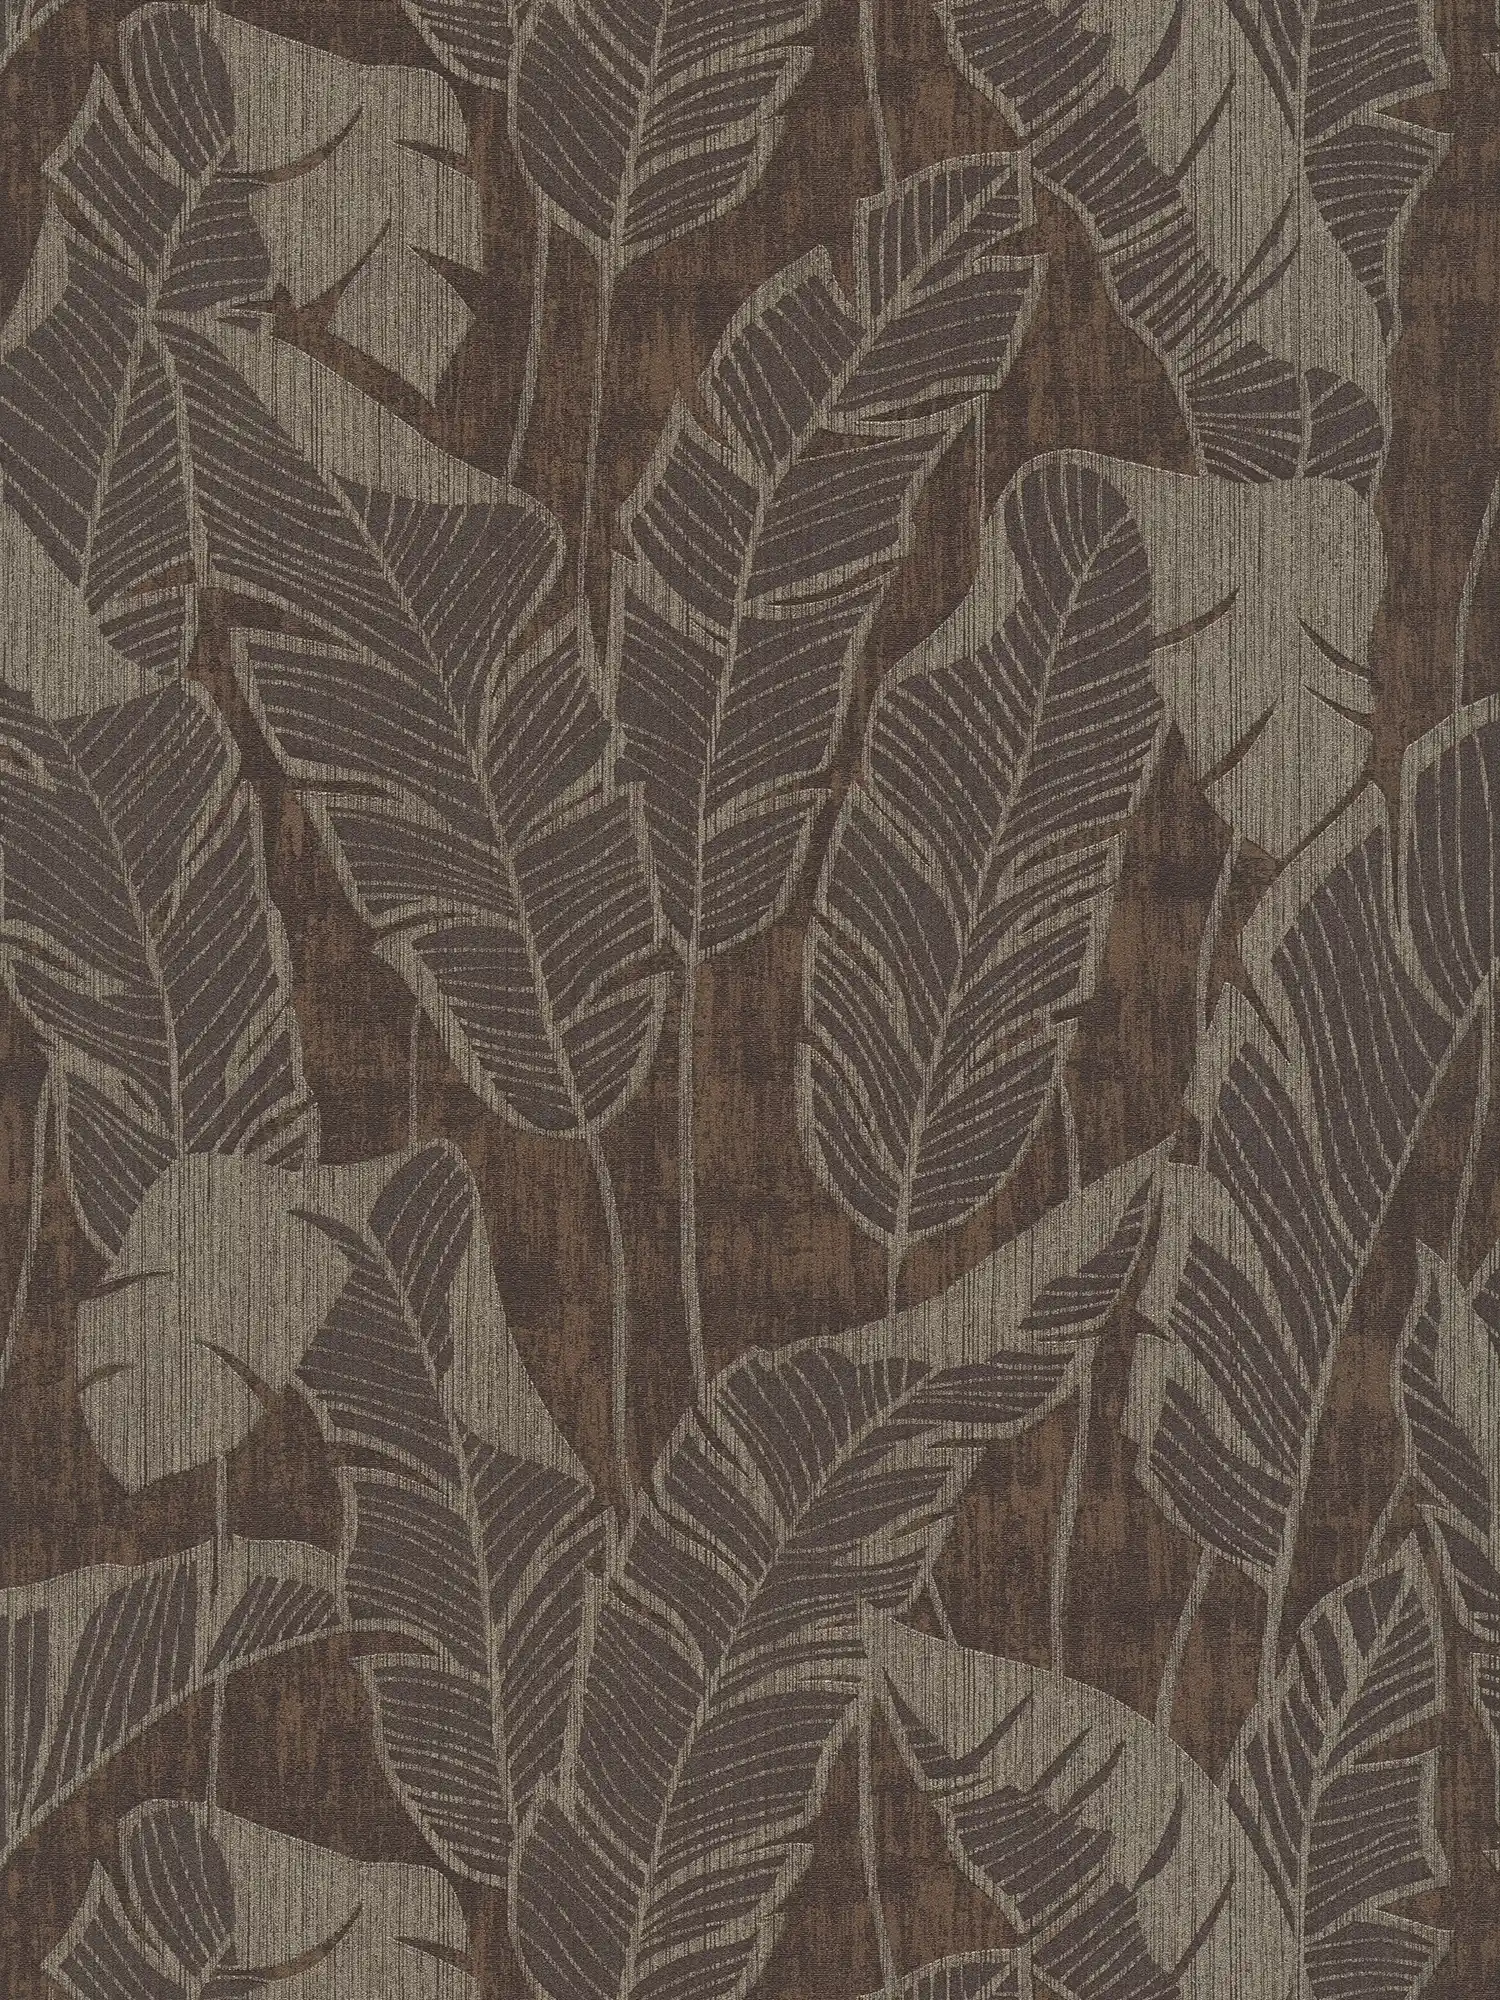 Florale Mustertapete mit Dschungeldesign – Braun, Grau, Schwarz
